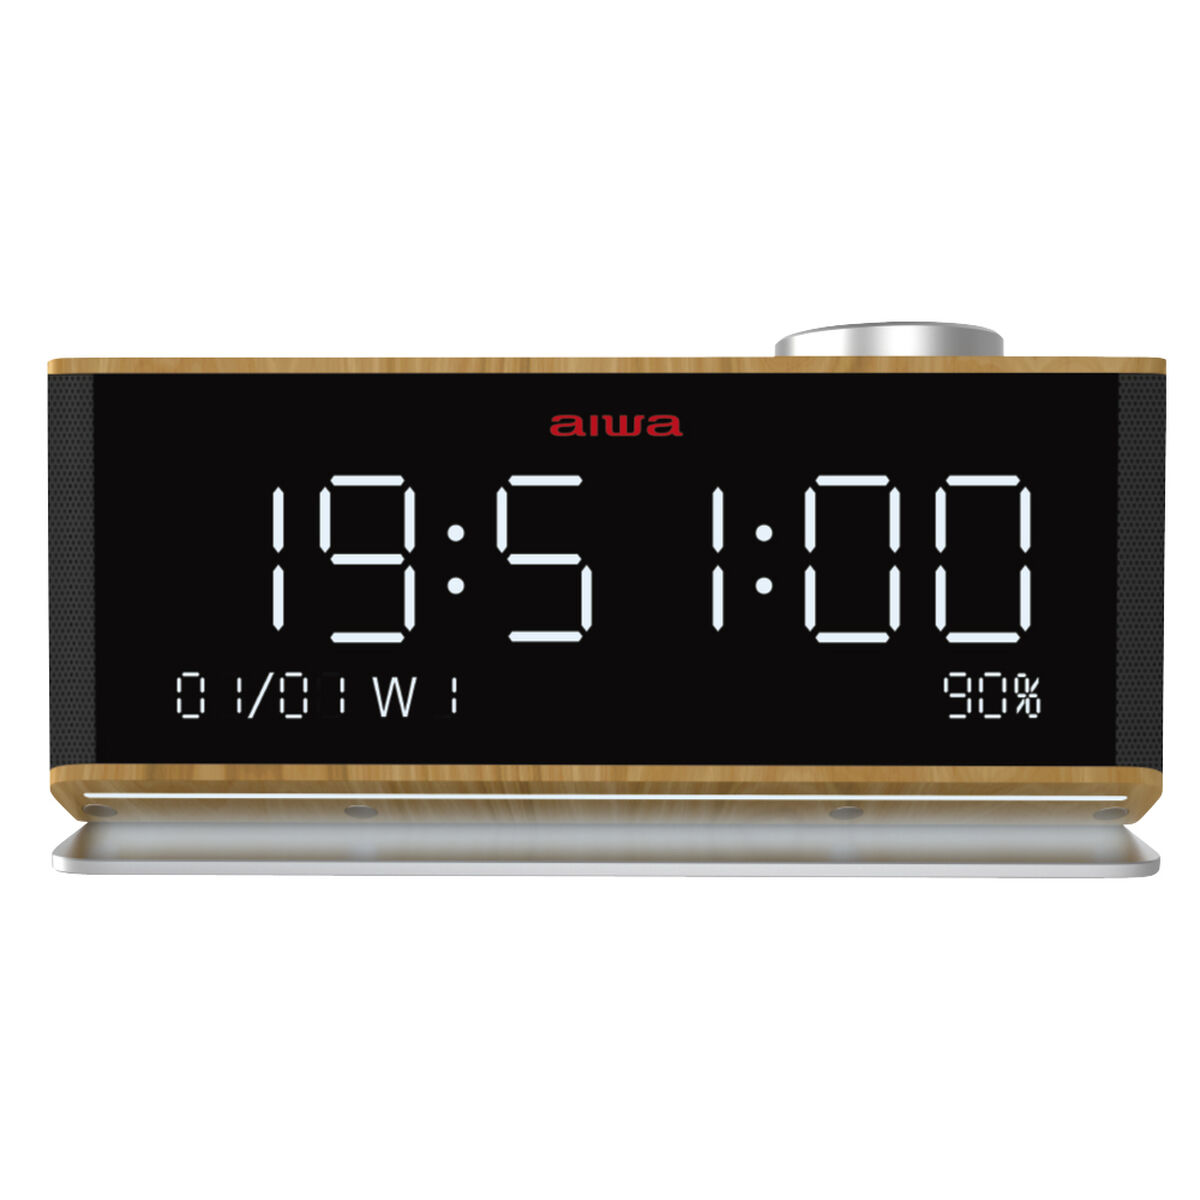 Вт 90 купить. Радиочасы Aiwa. Aiwa часы электронные. Радио будильник Aiwa-77. Радиоприёмник будильник АIWA fr-a27не.